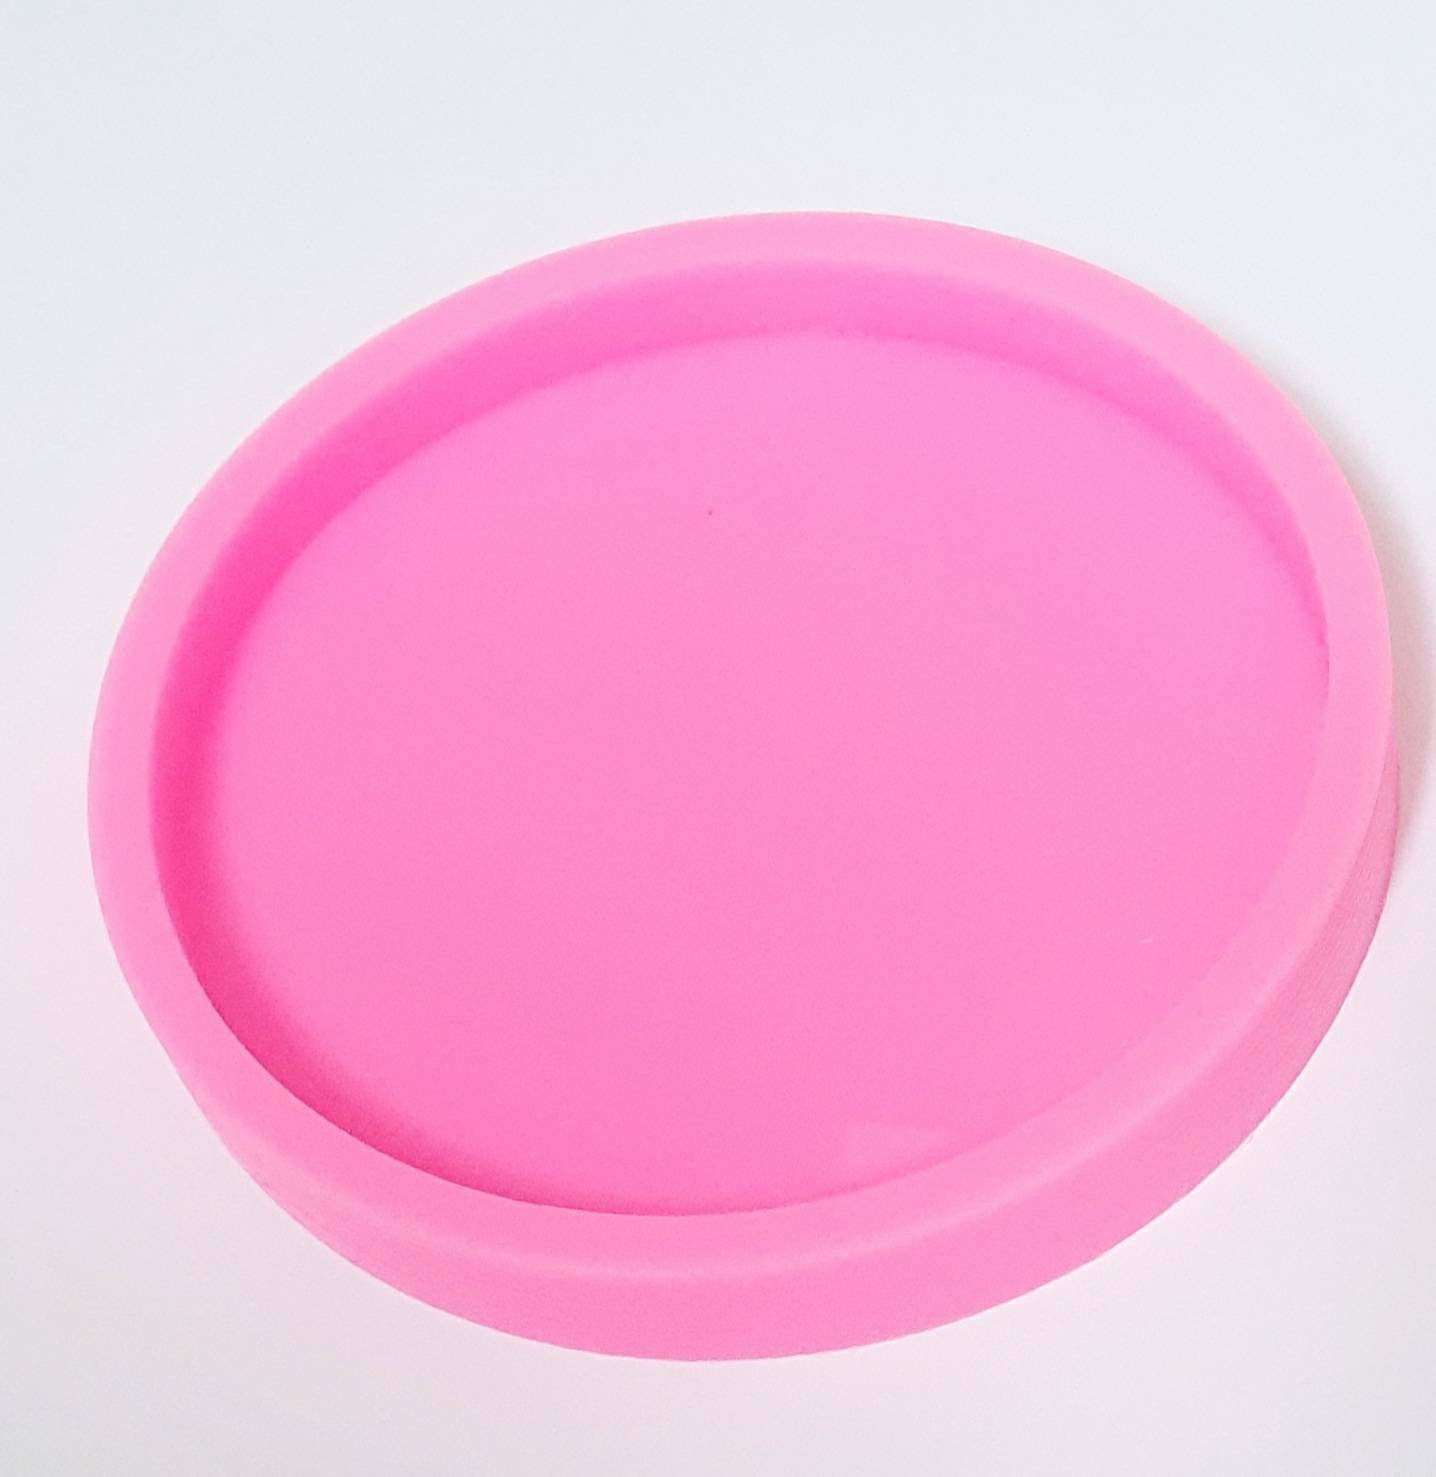 molde de silicona para posavasos circular con borde de 8 cm, para copias  con resina epoxi y jesmonite